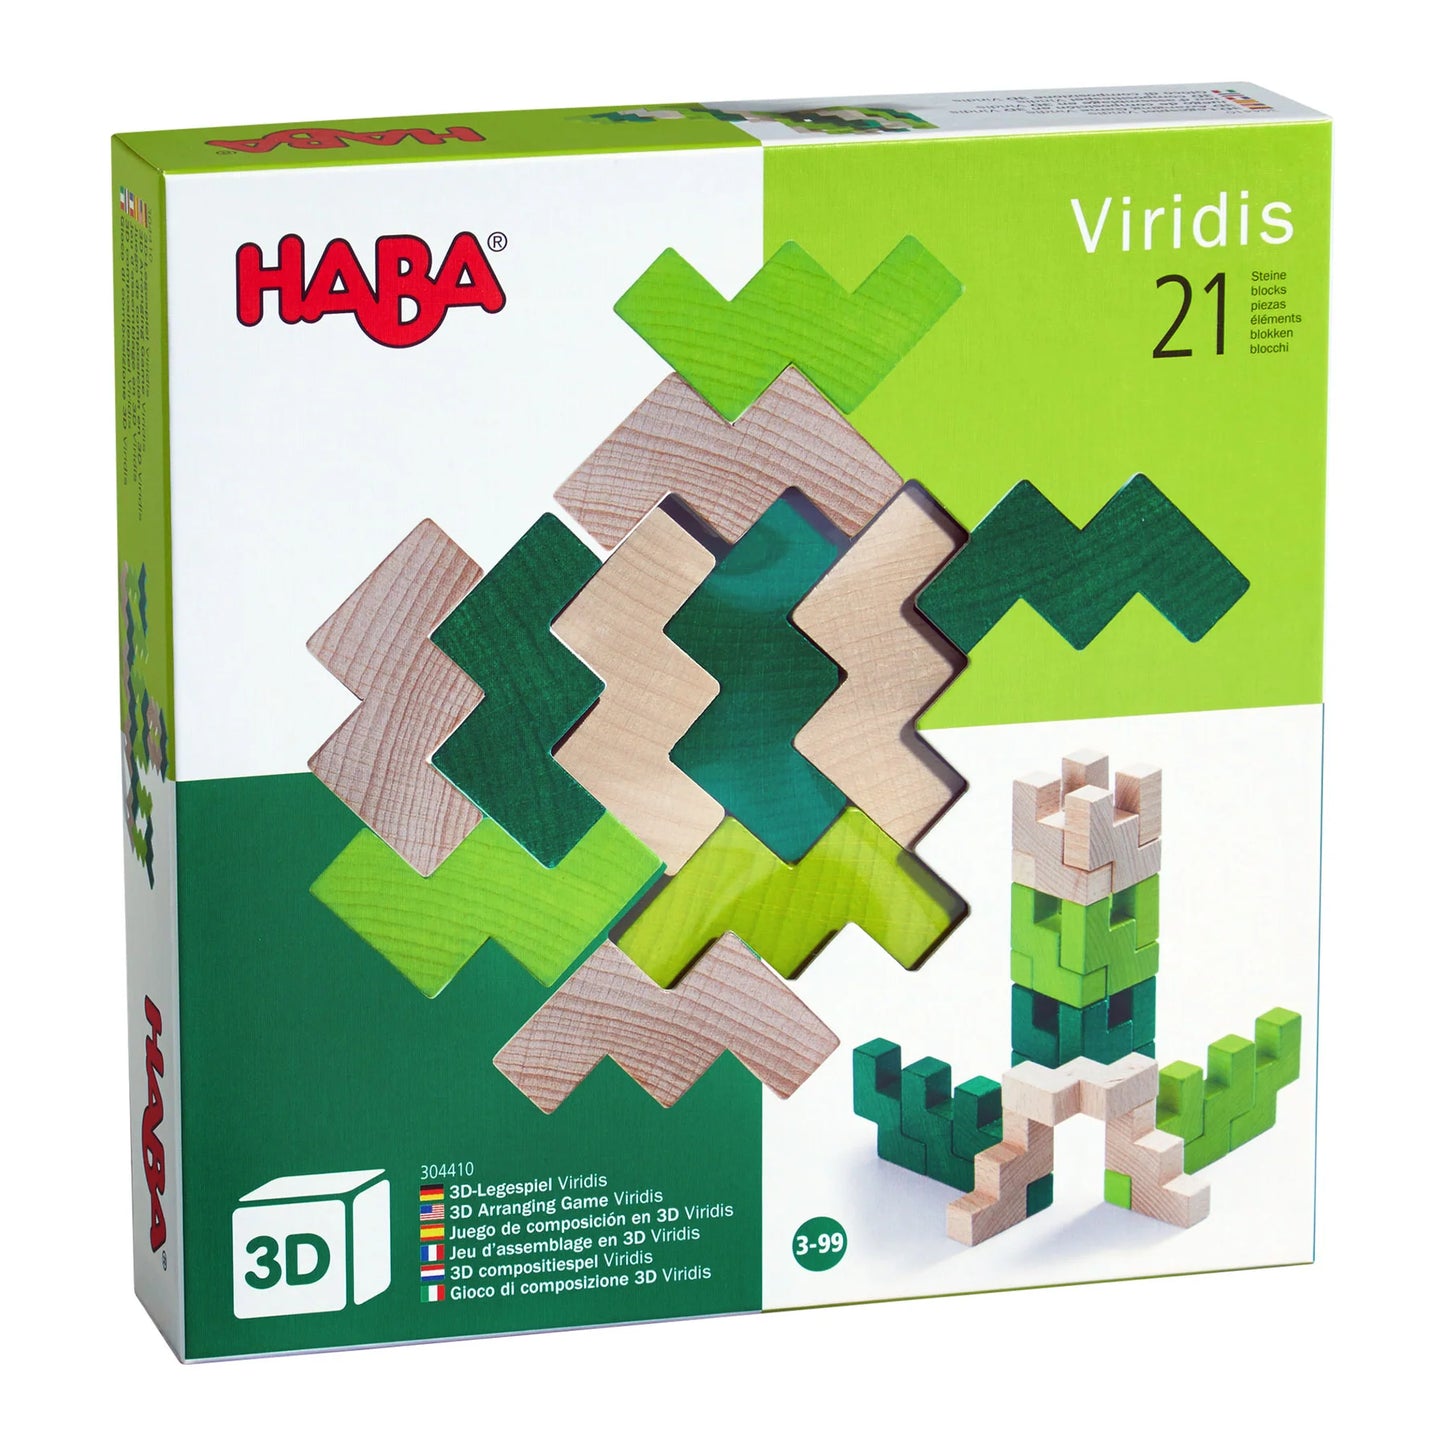 HABA 3D Viridis Wooden Stacking Game